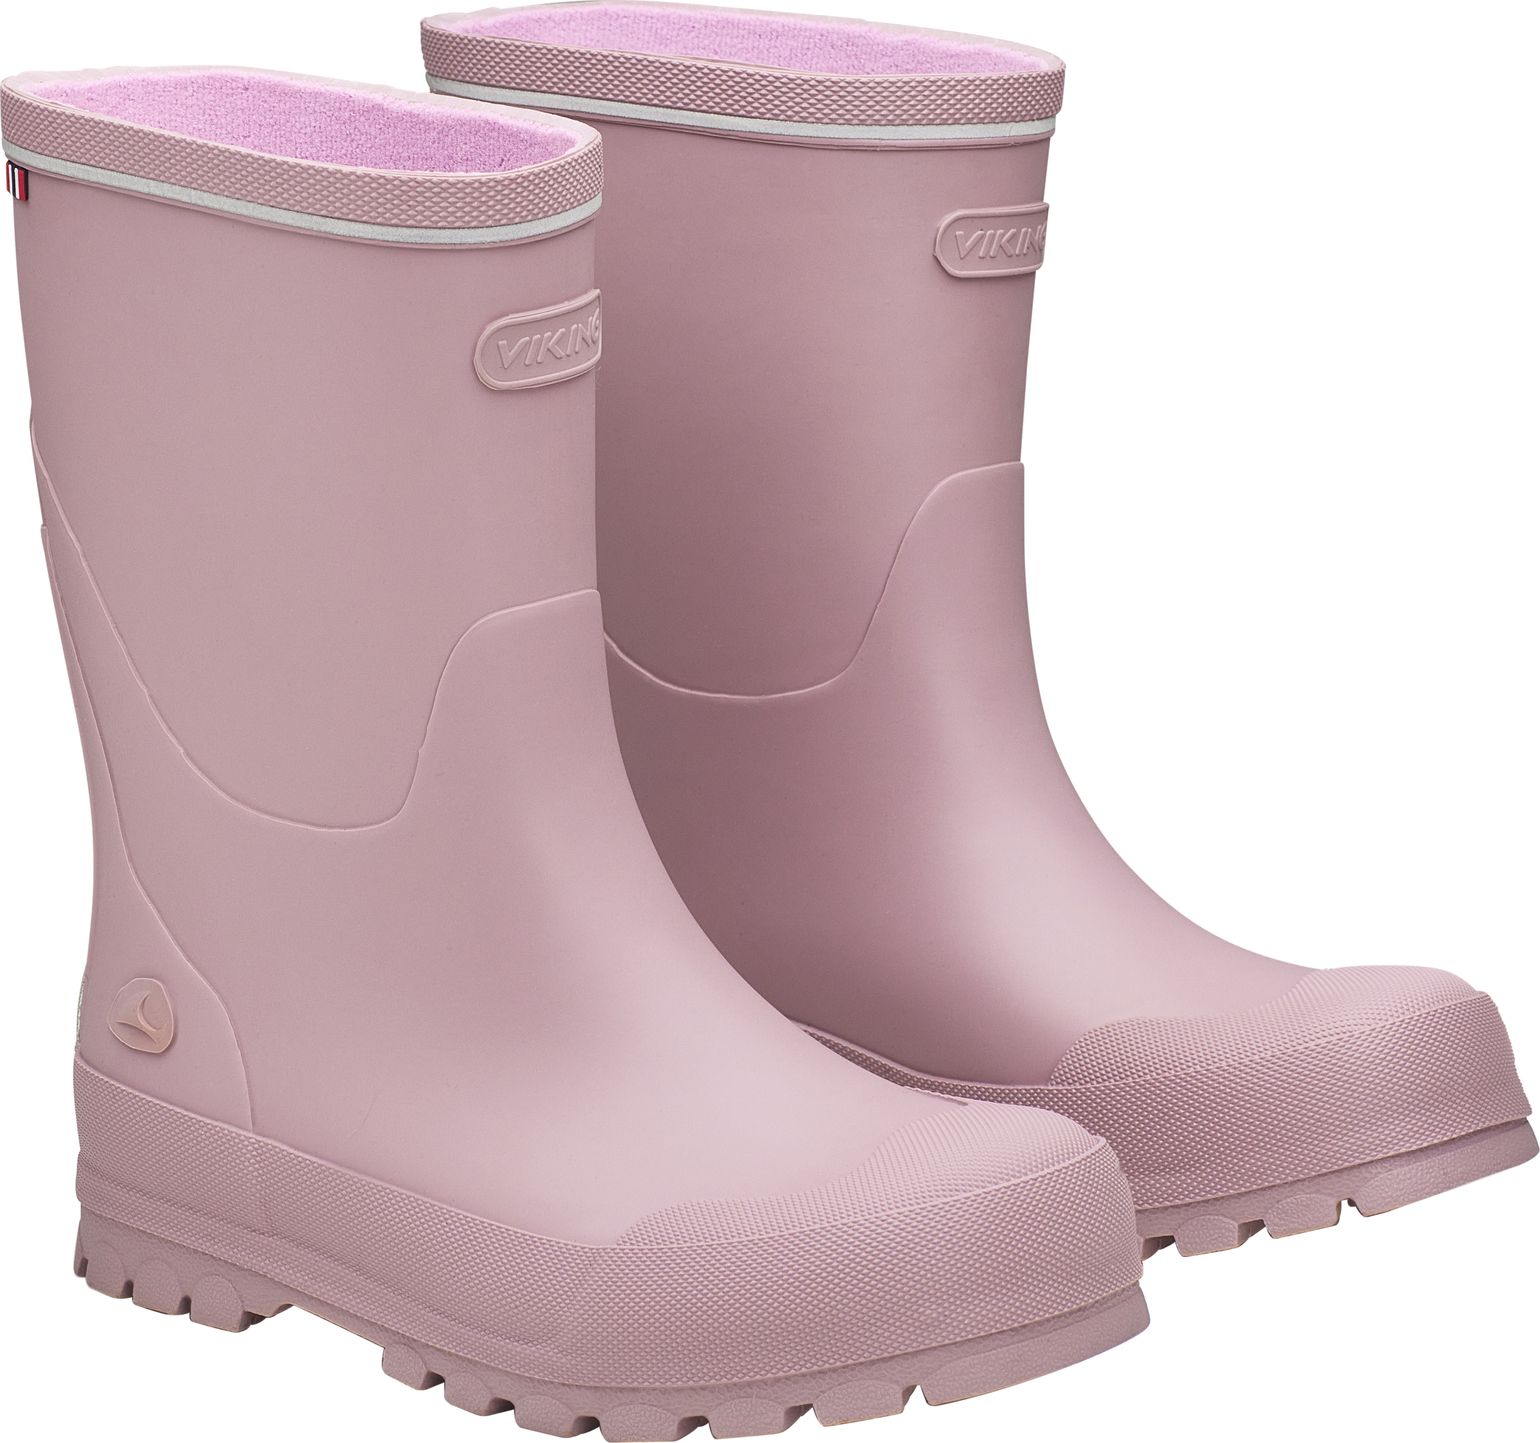 Viking Footwear Kids' Jolly Dusty Pink